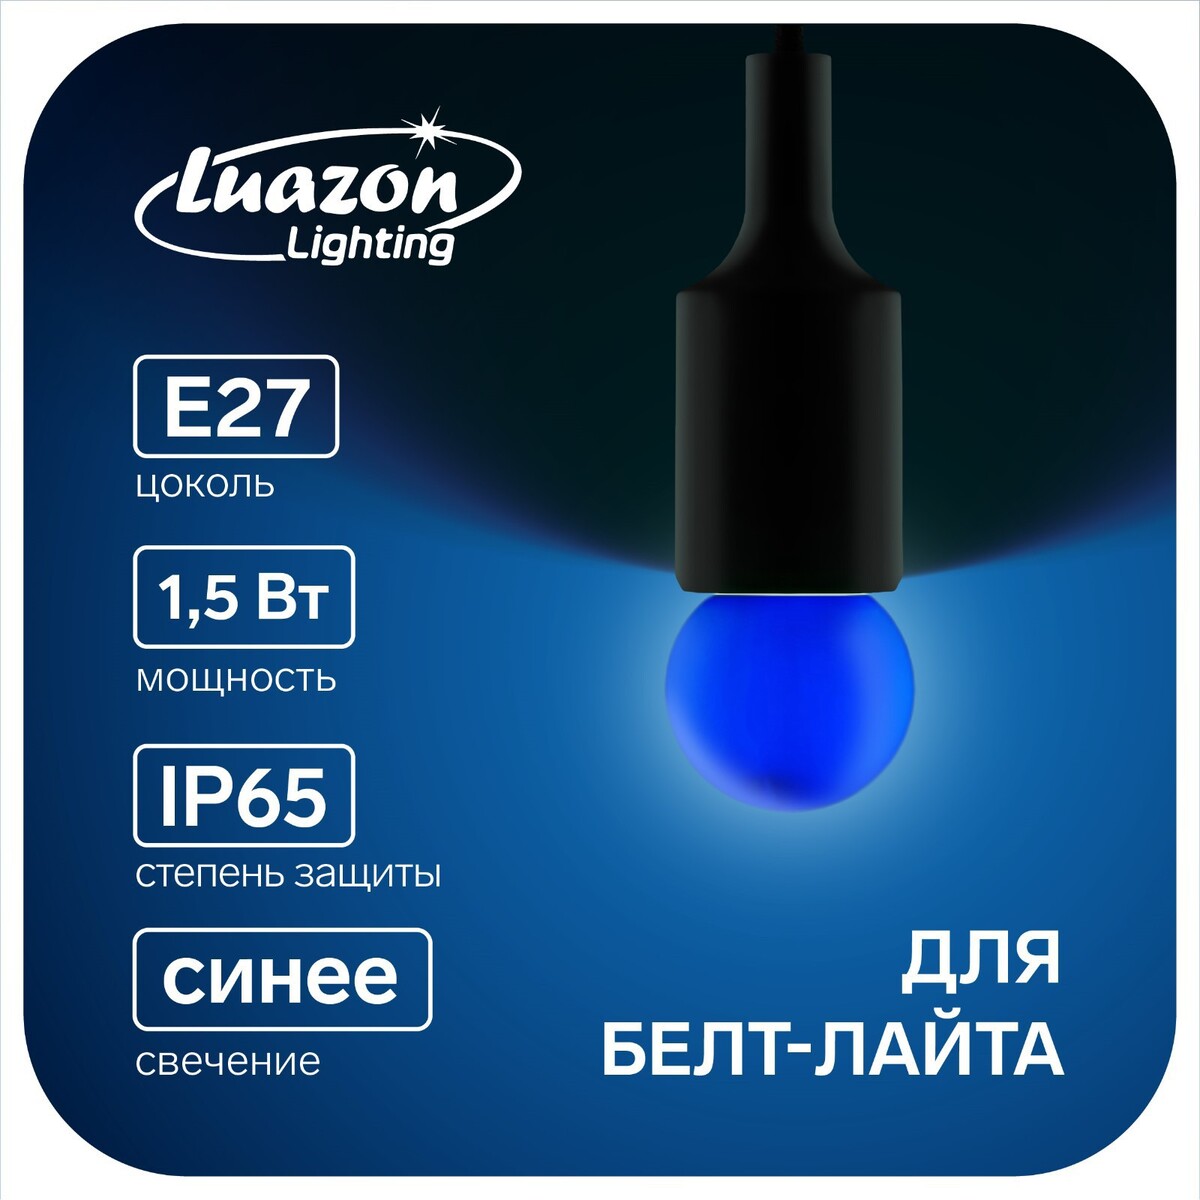 Лампа светодиодная luazon lighting, g45, е27, 1.5 вт, для белт-лайта, синяя, наб 20 шт лампа cветодиодная luazon lighting g45 7 вт е14 630 лм 4000 к дневной свет